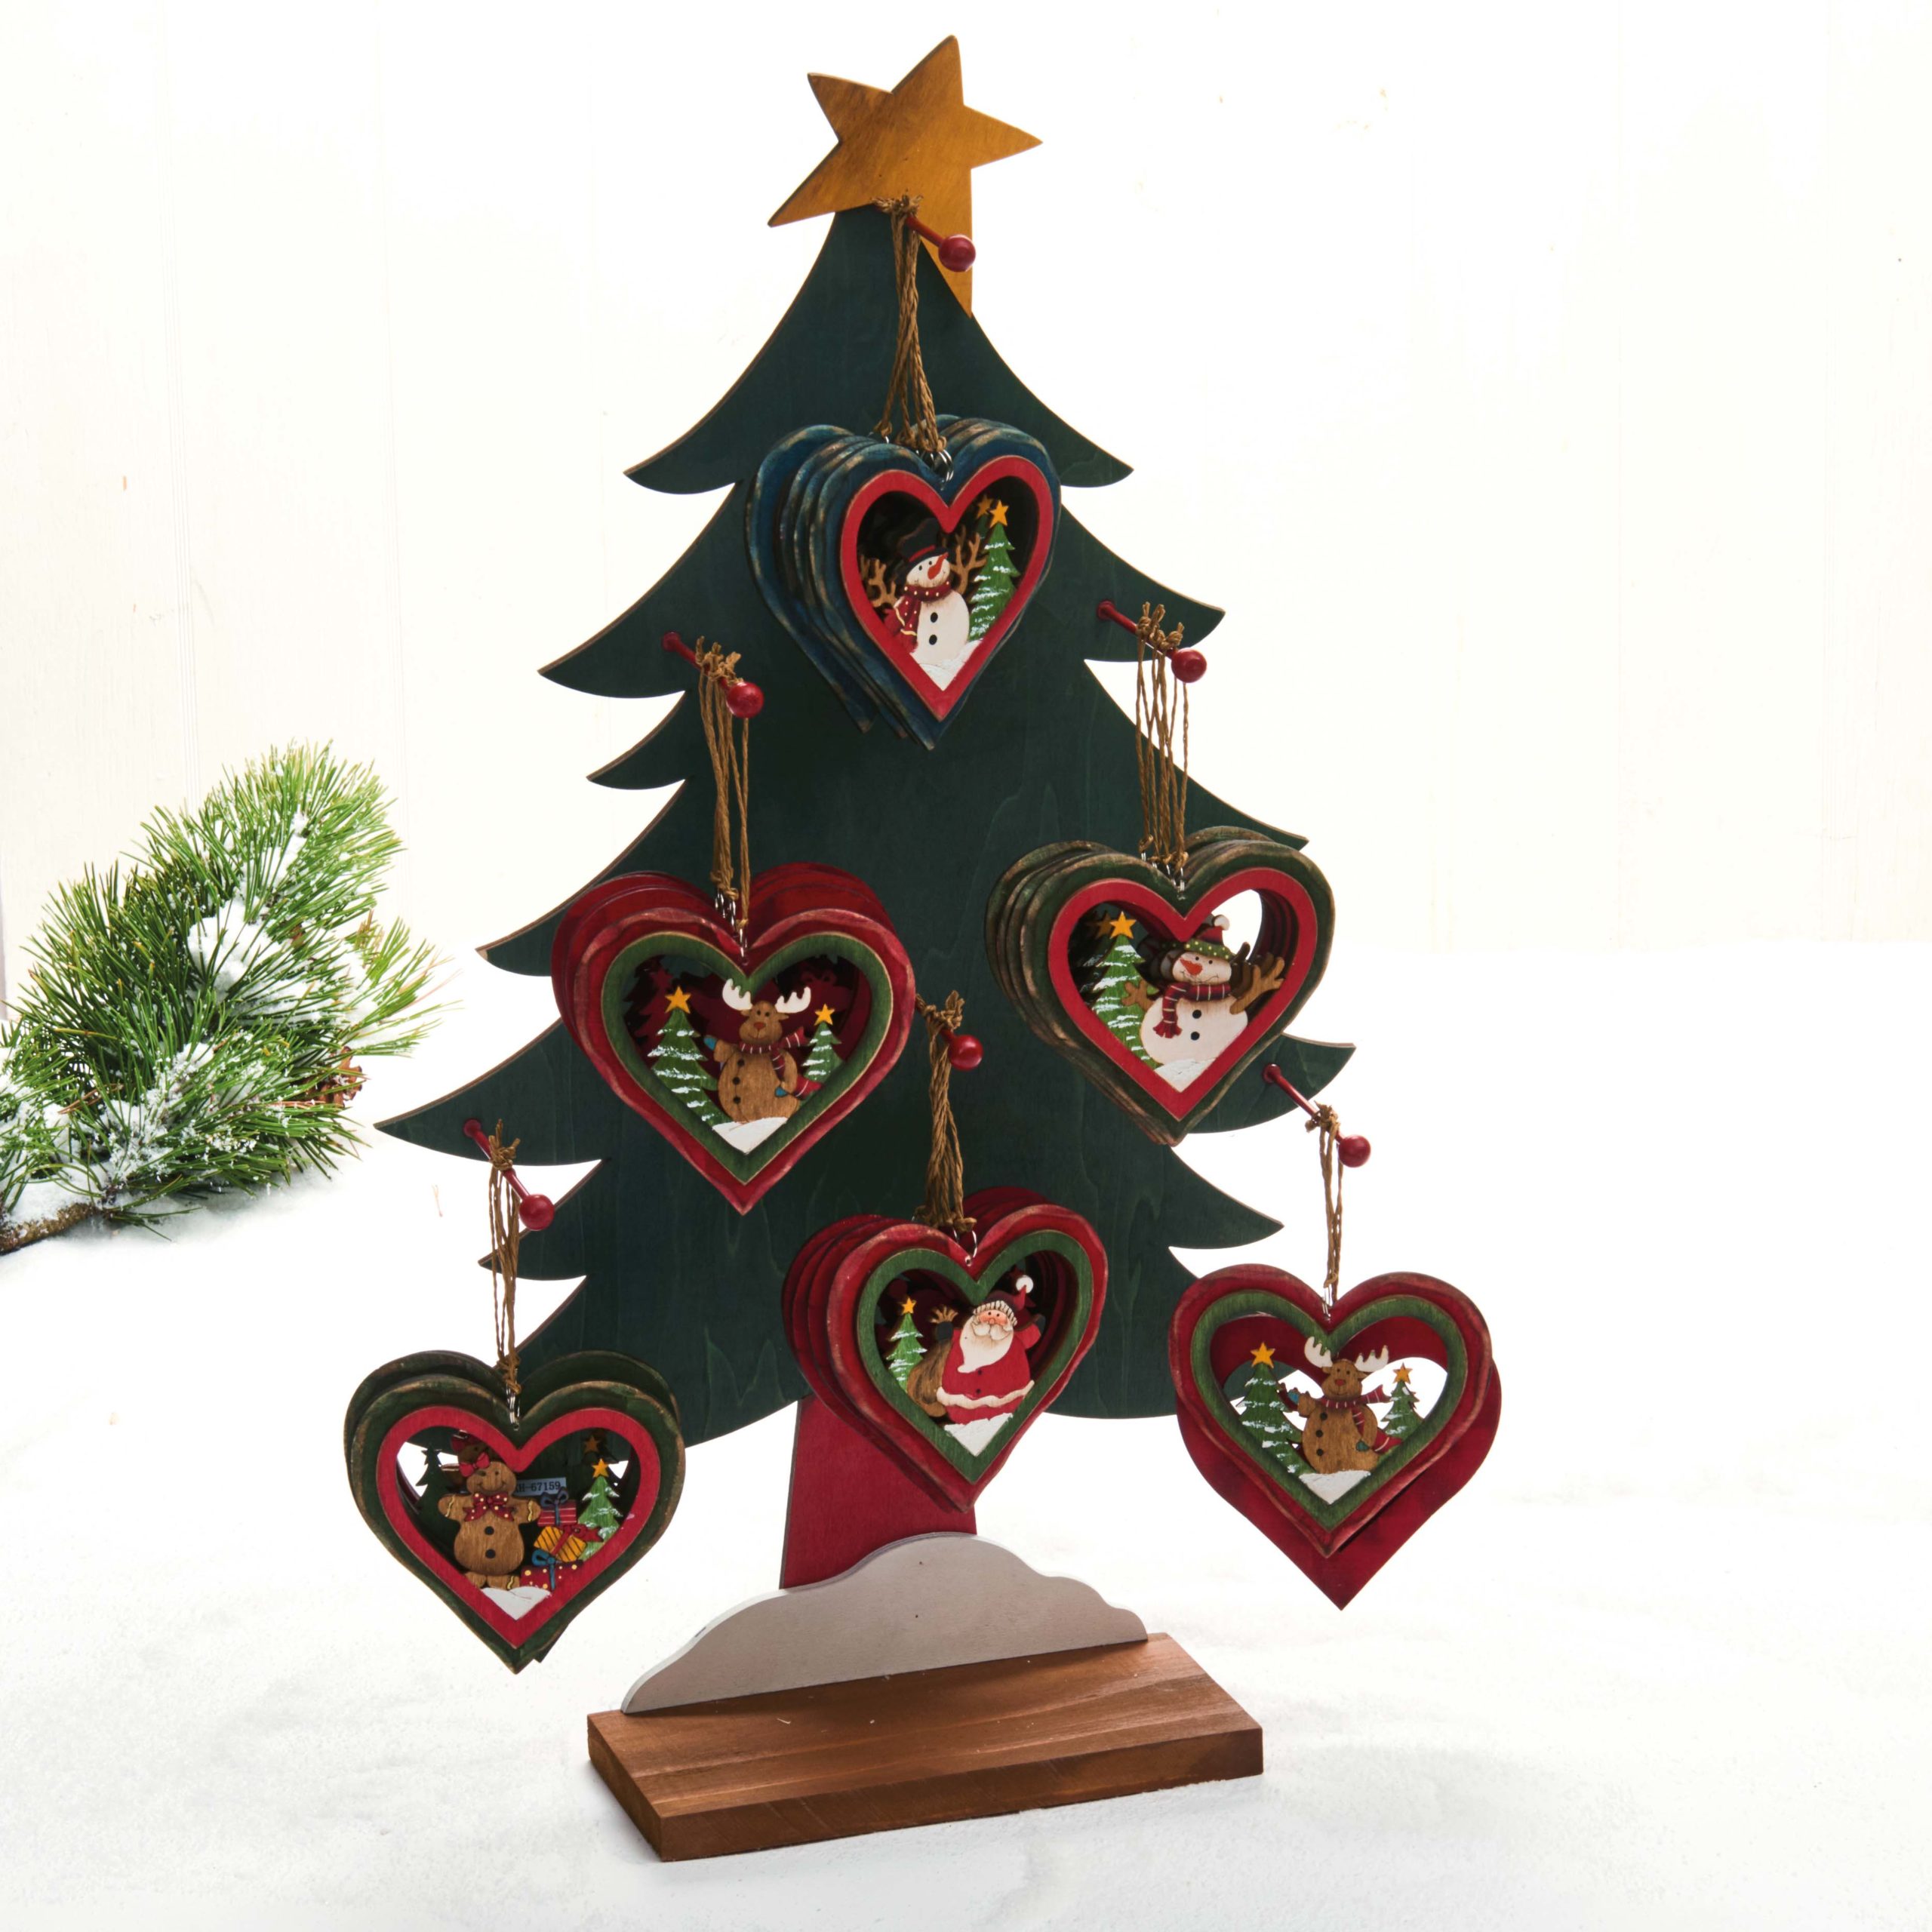 Hjertetræfigur til juletræet – Snemand med hue